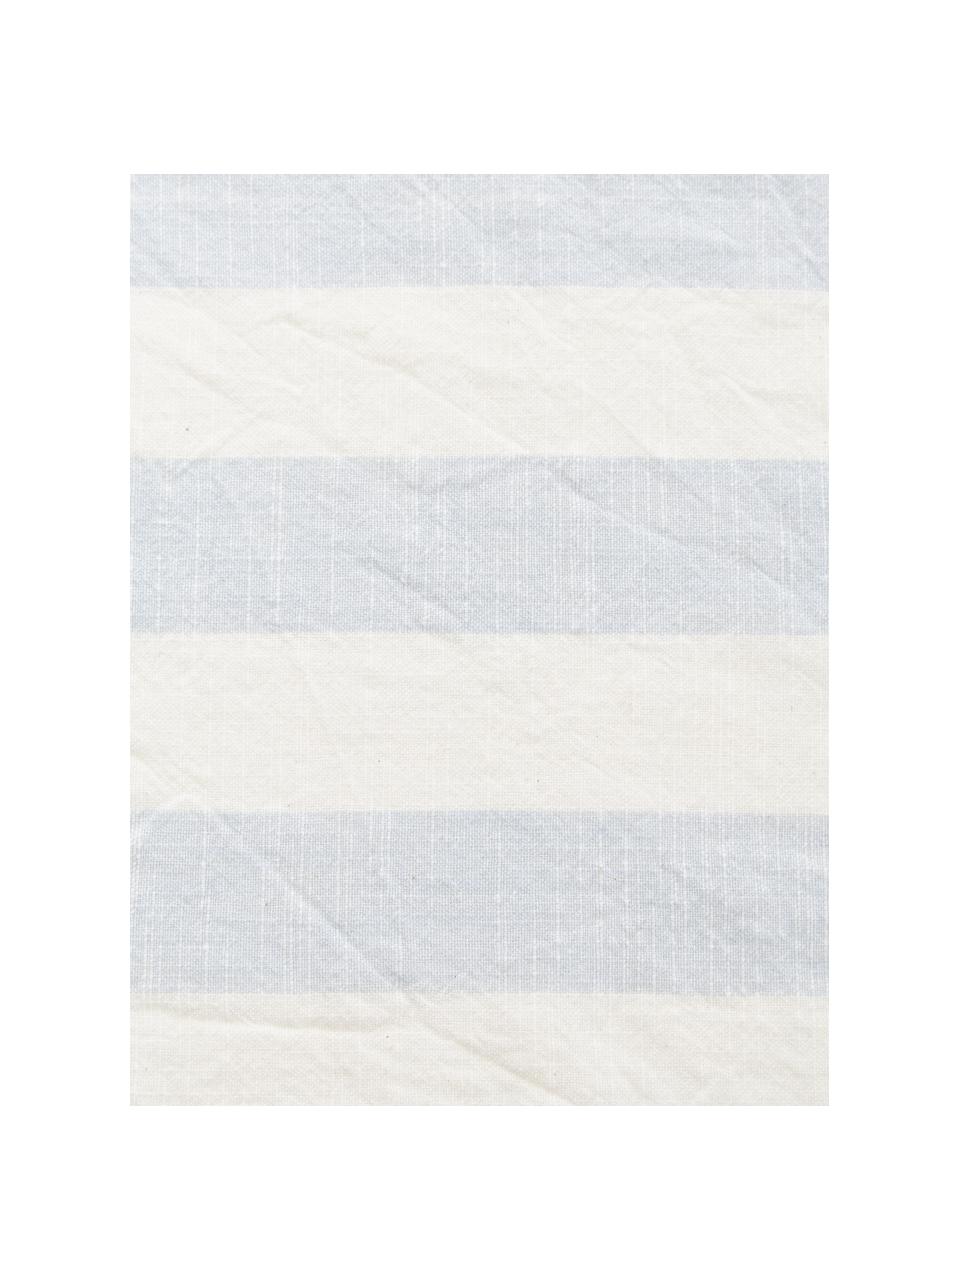 Serwetka z bawełny, 2 szt., 100% bawełna, Niebieski, biały, w paski, S 45 x D 45 cm